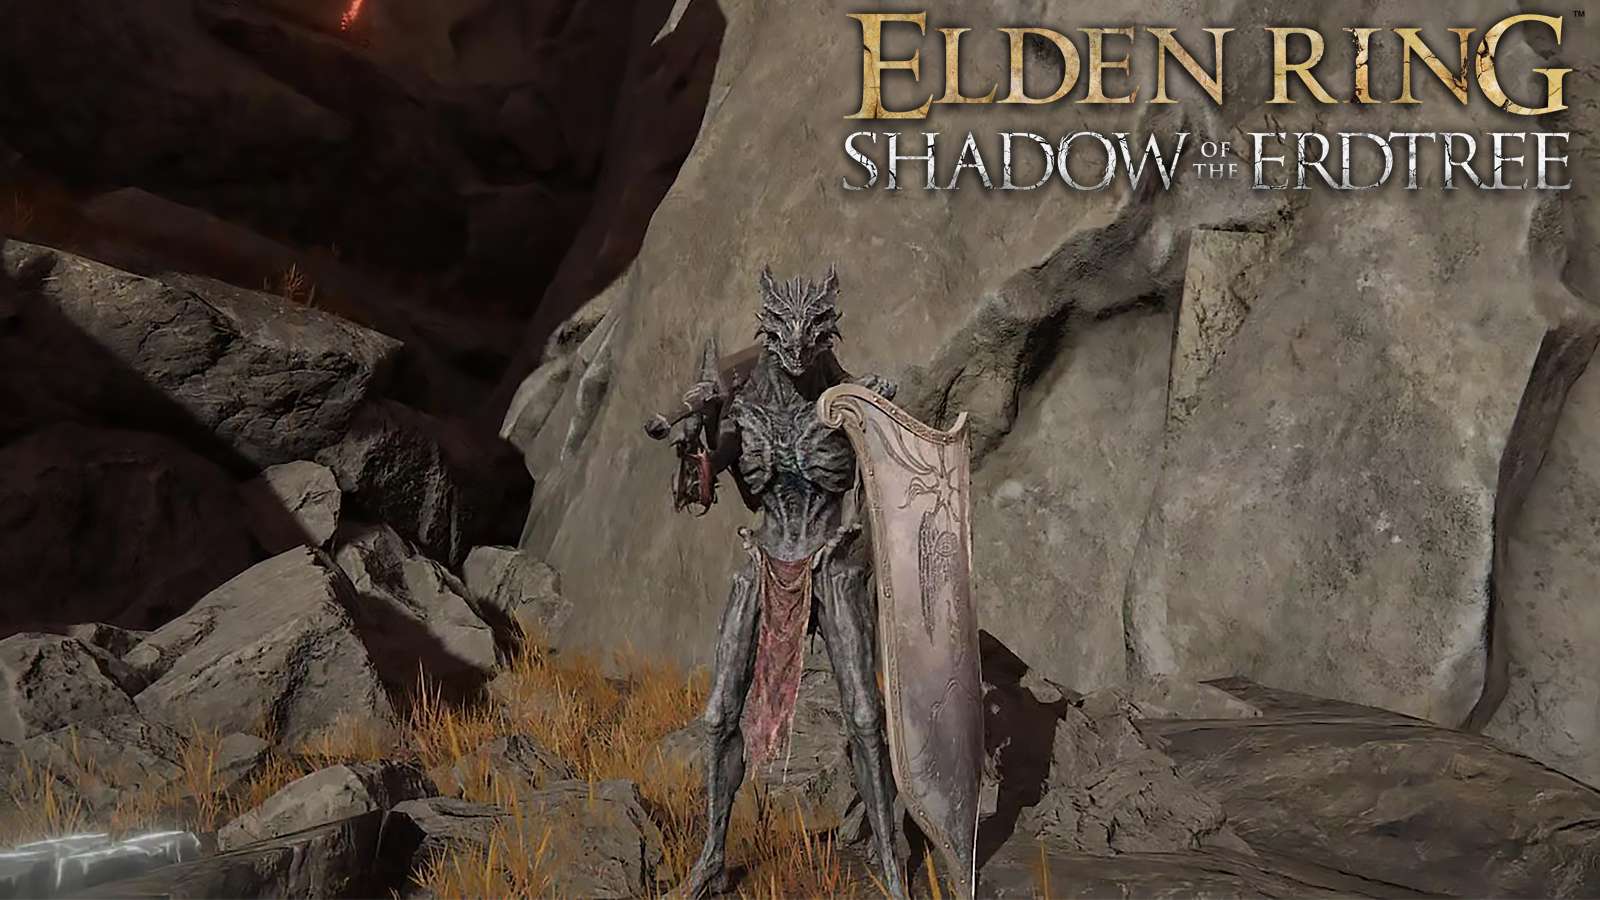 Joueur de Elden Ring Shadow of the Erdtree avec une apparence de dragon ancien